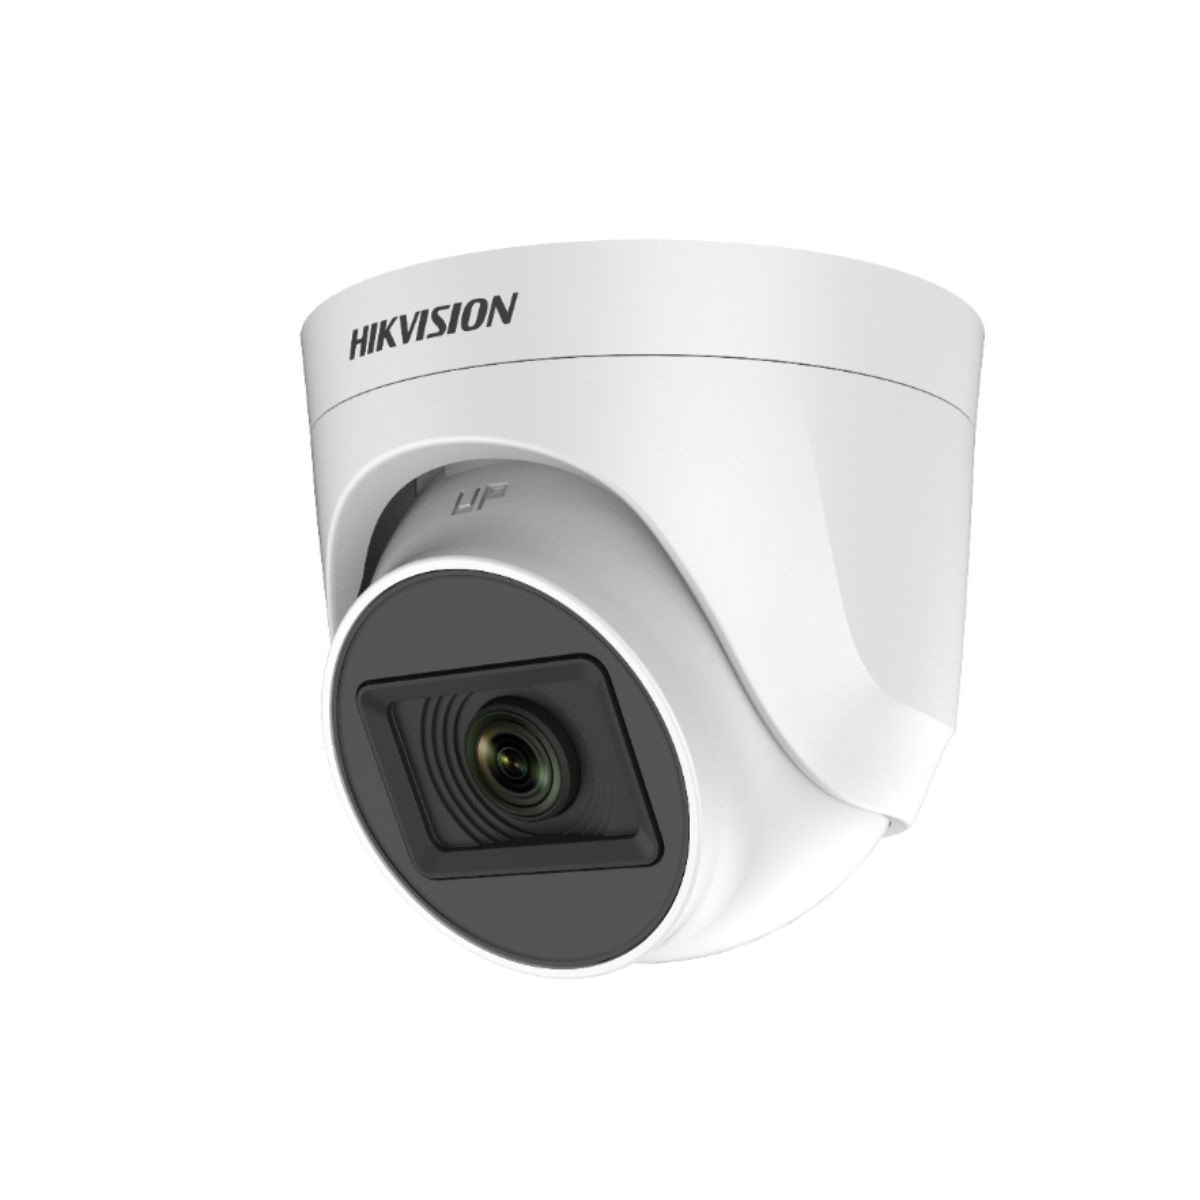 Camera Dome hồng ngoại 20m Hikvision DS-2CE76D0T-EXIPF 2MP 1080P, chống bụi và nước IP66